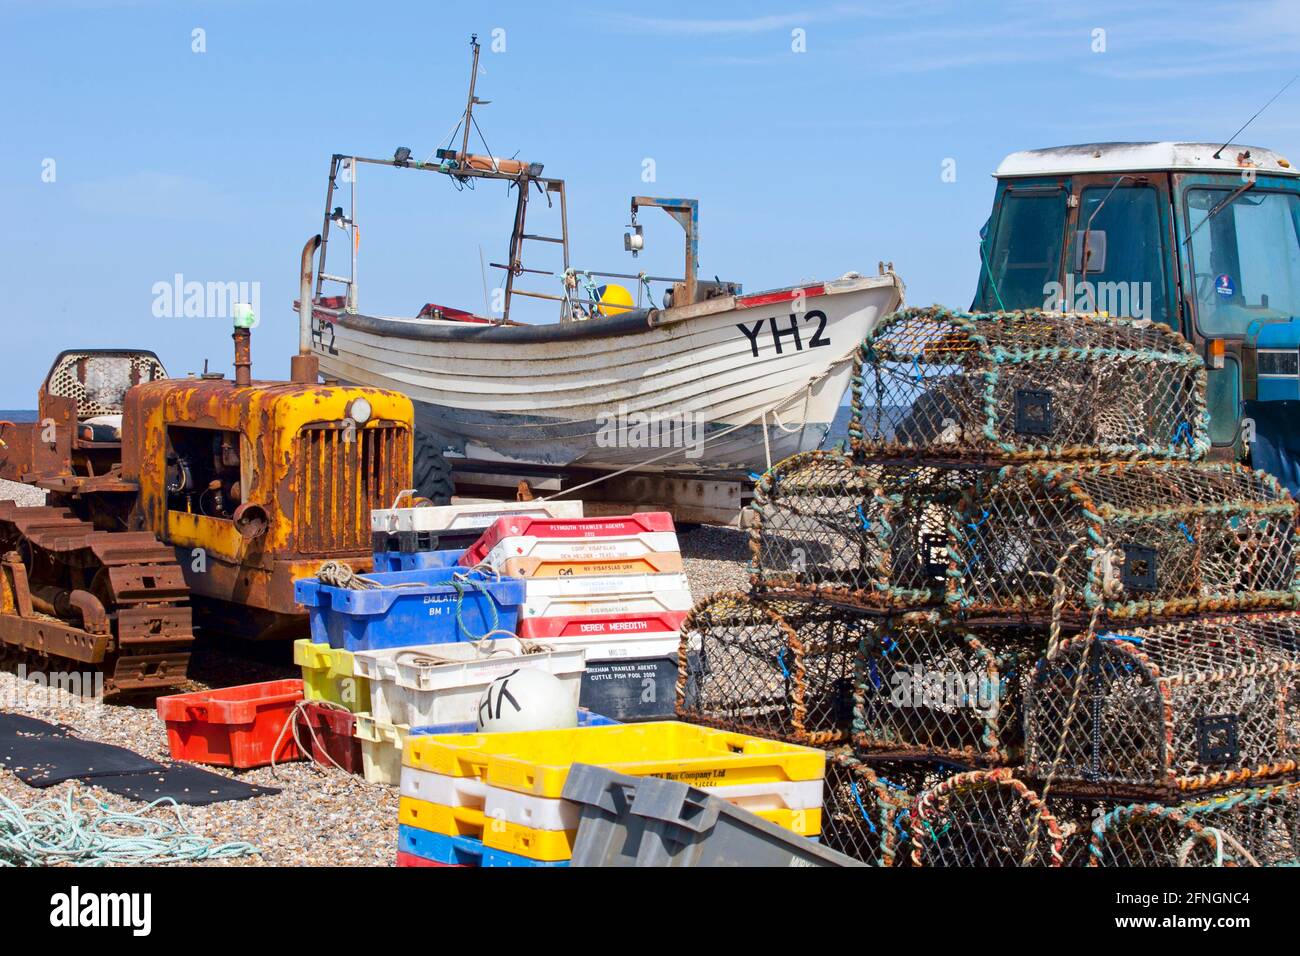 Pentole di aragosta sulla spiaggia di ciottoli con trattore ford e barca da pesca Foto Stock